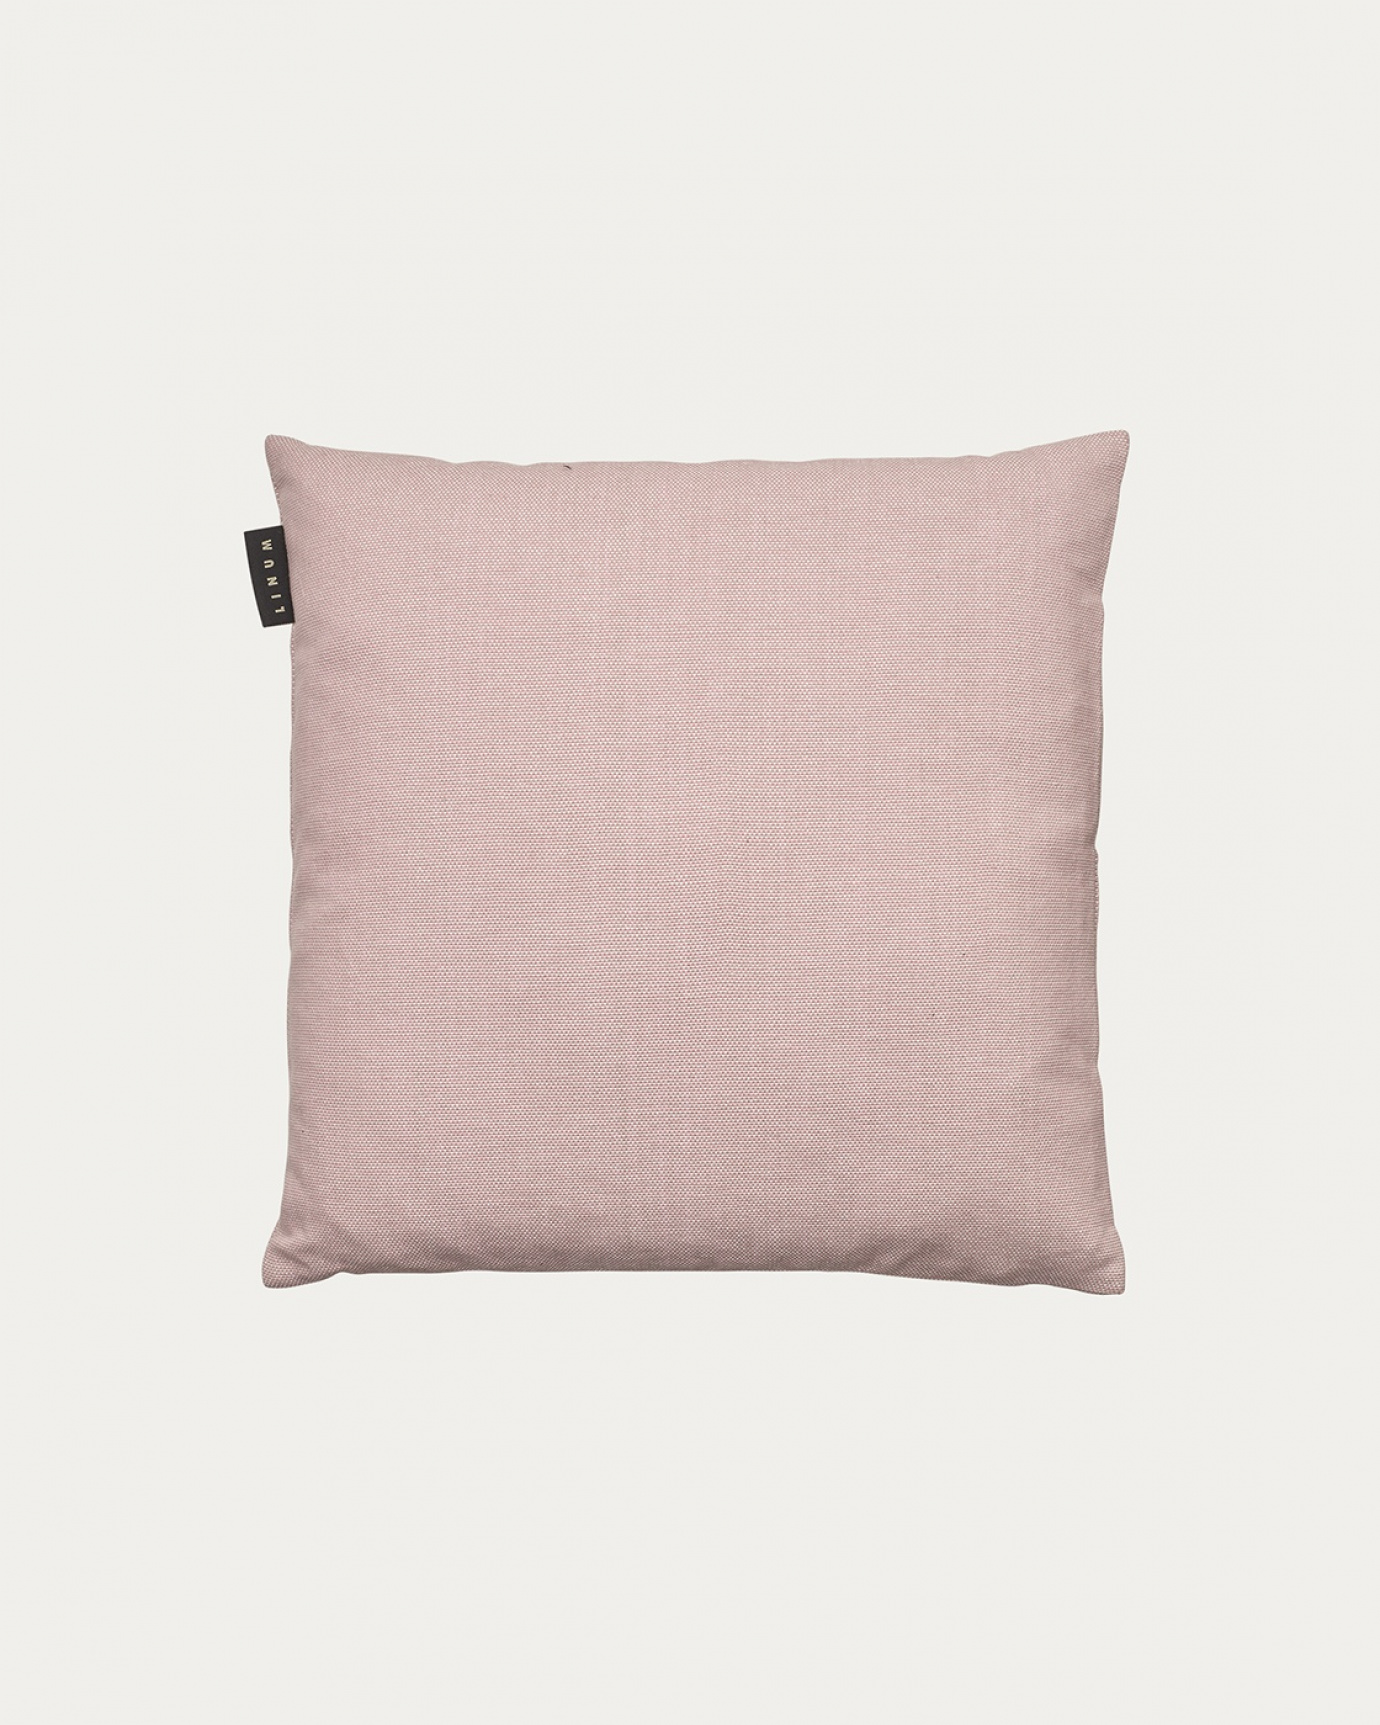 Image du produit housse de coussin PEPPER rose poudré en coton doux de LINUM DESIGN. Facile à laver et durable pendant des générations. Taille 40 x 40 cm.